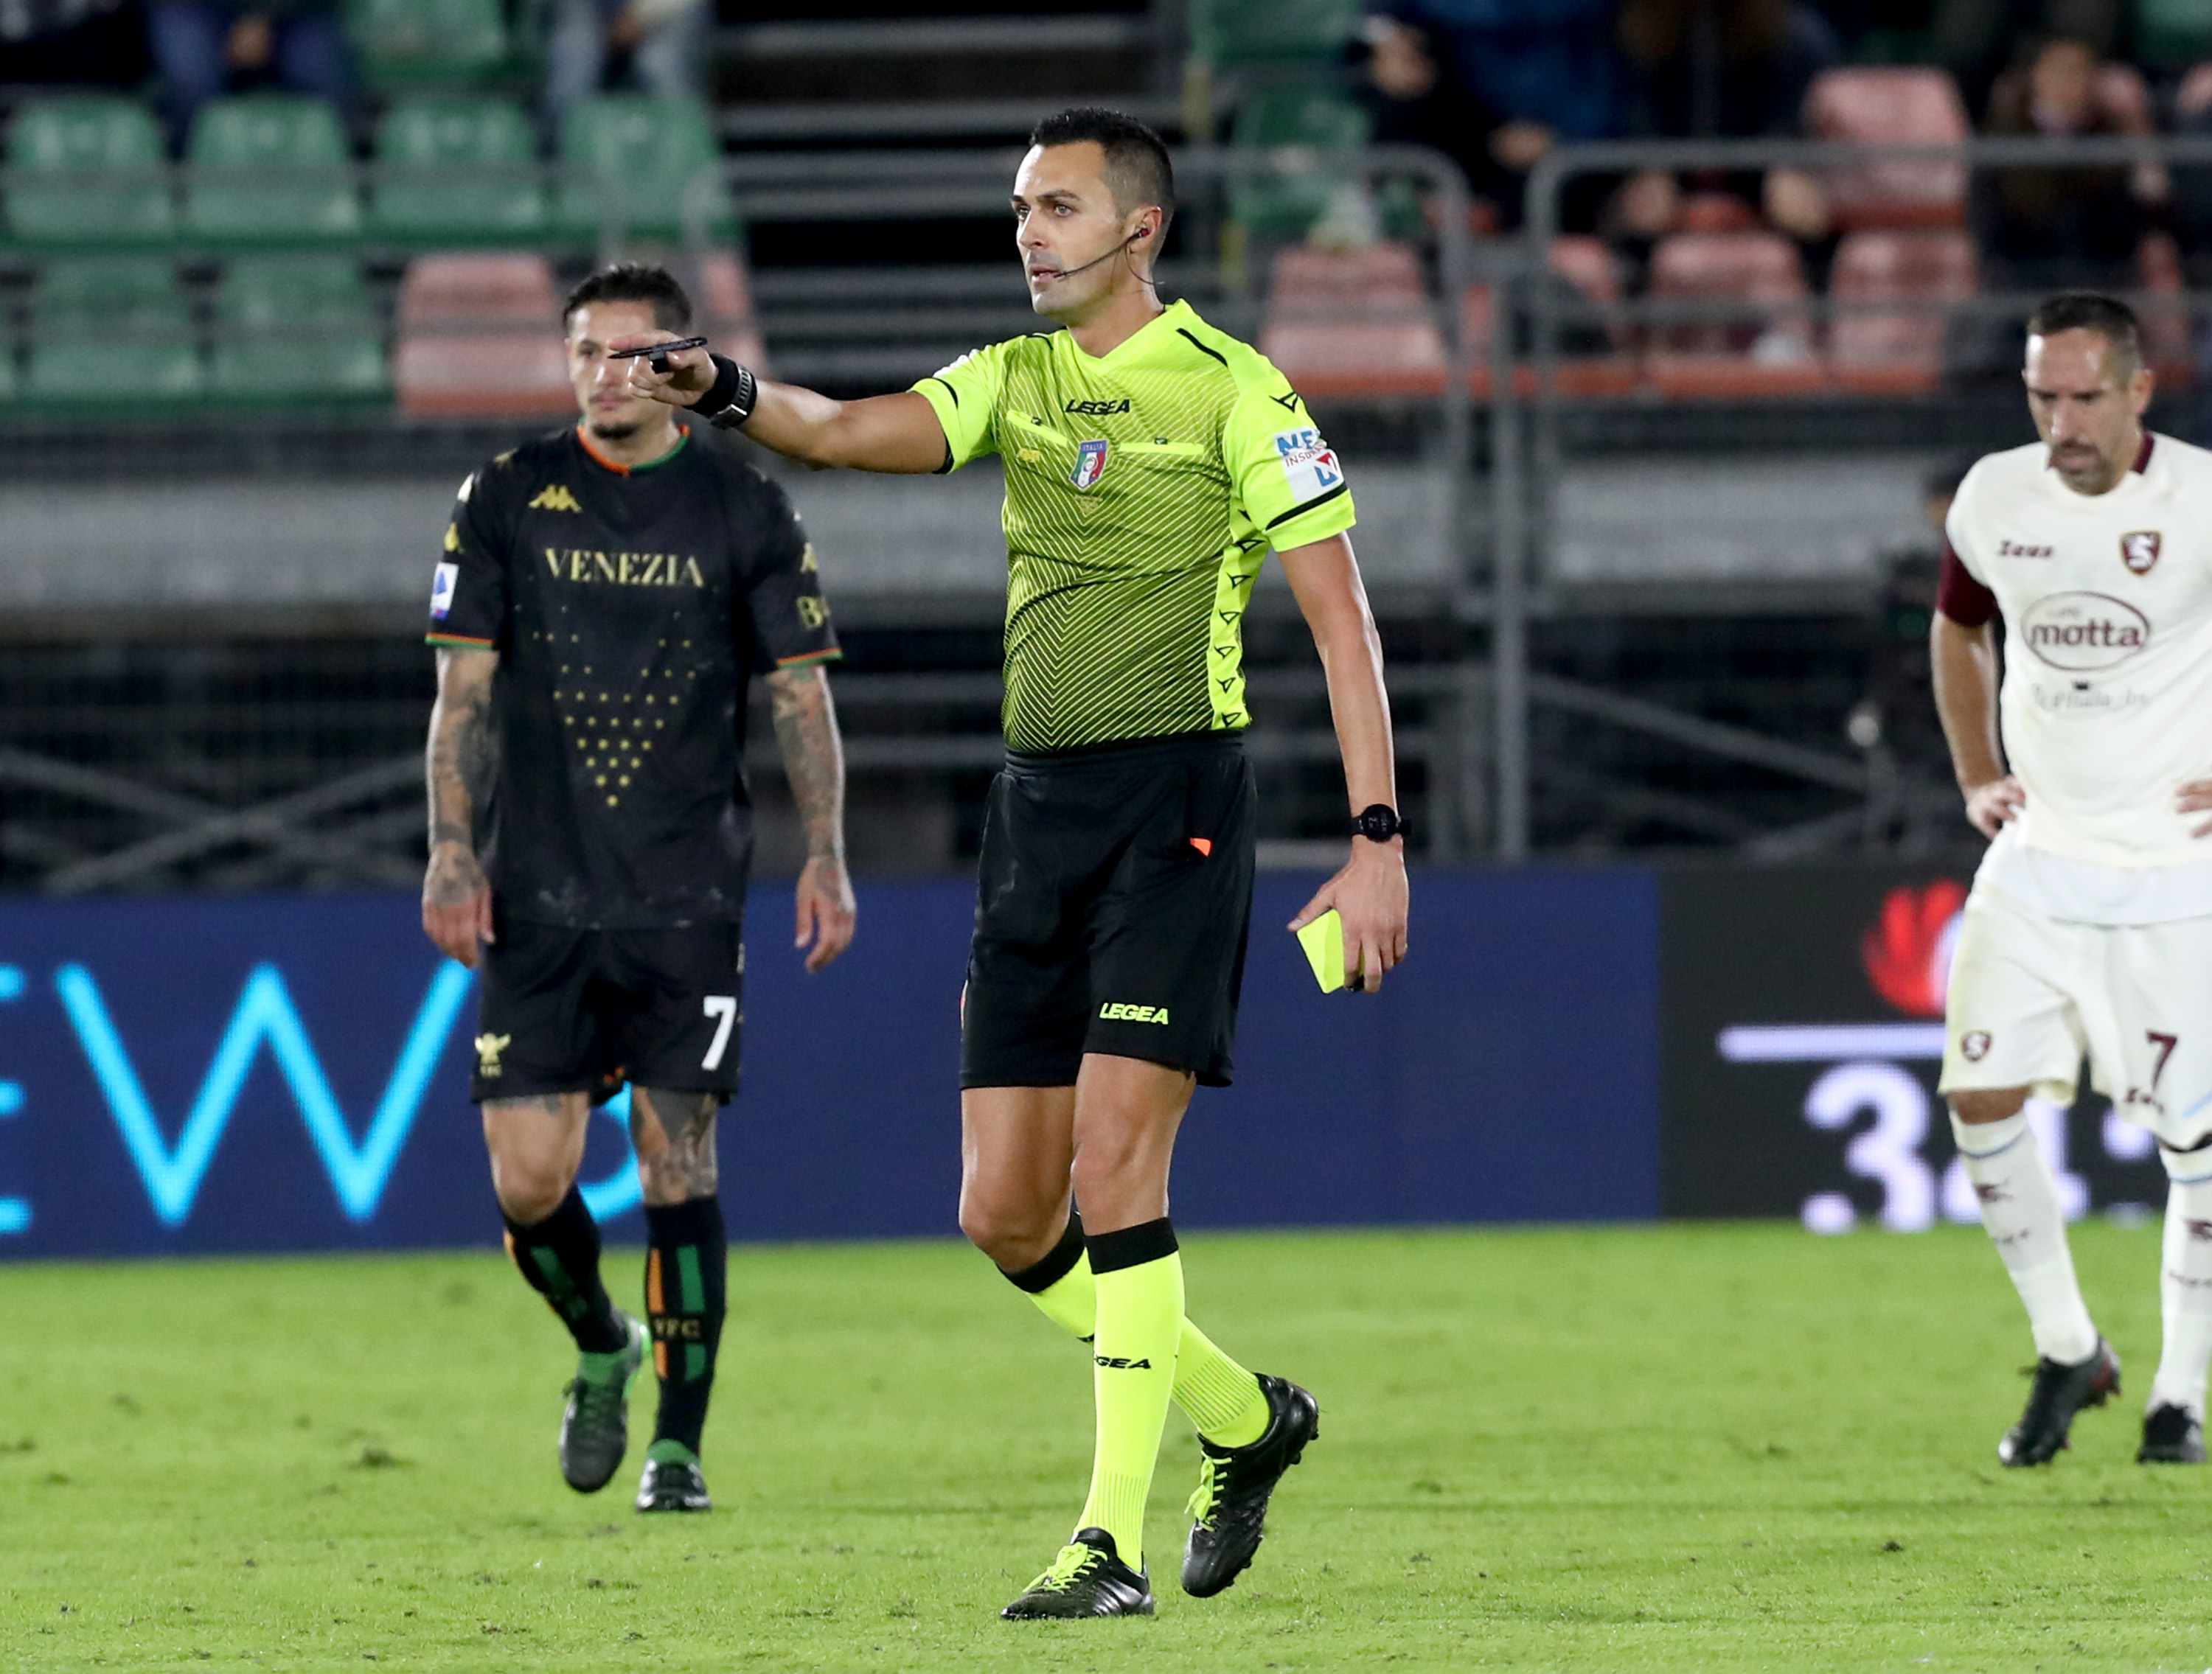 Lo sconcertante cartellino rosso del Venezia riaccende le voci sulle partite truccate di Serie A